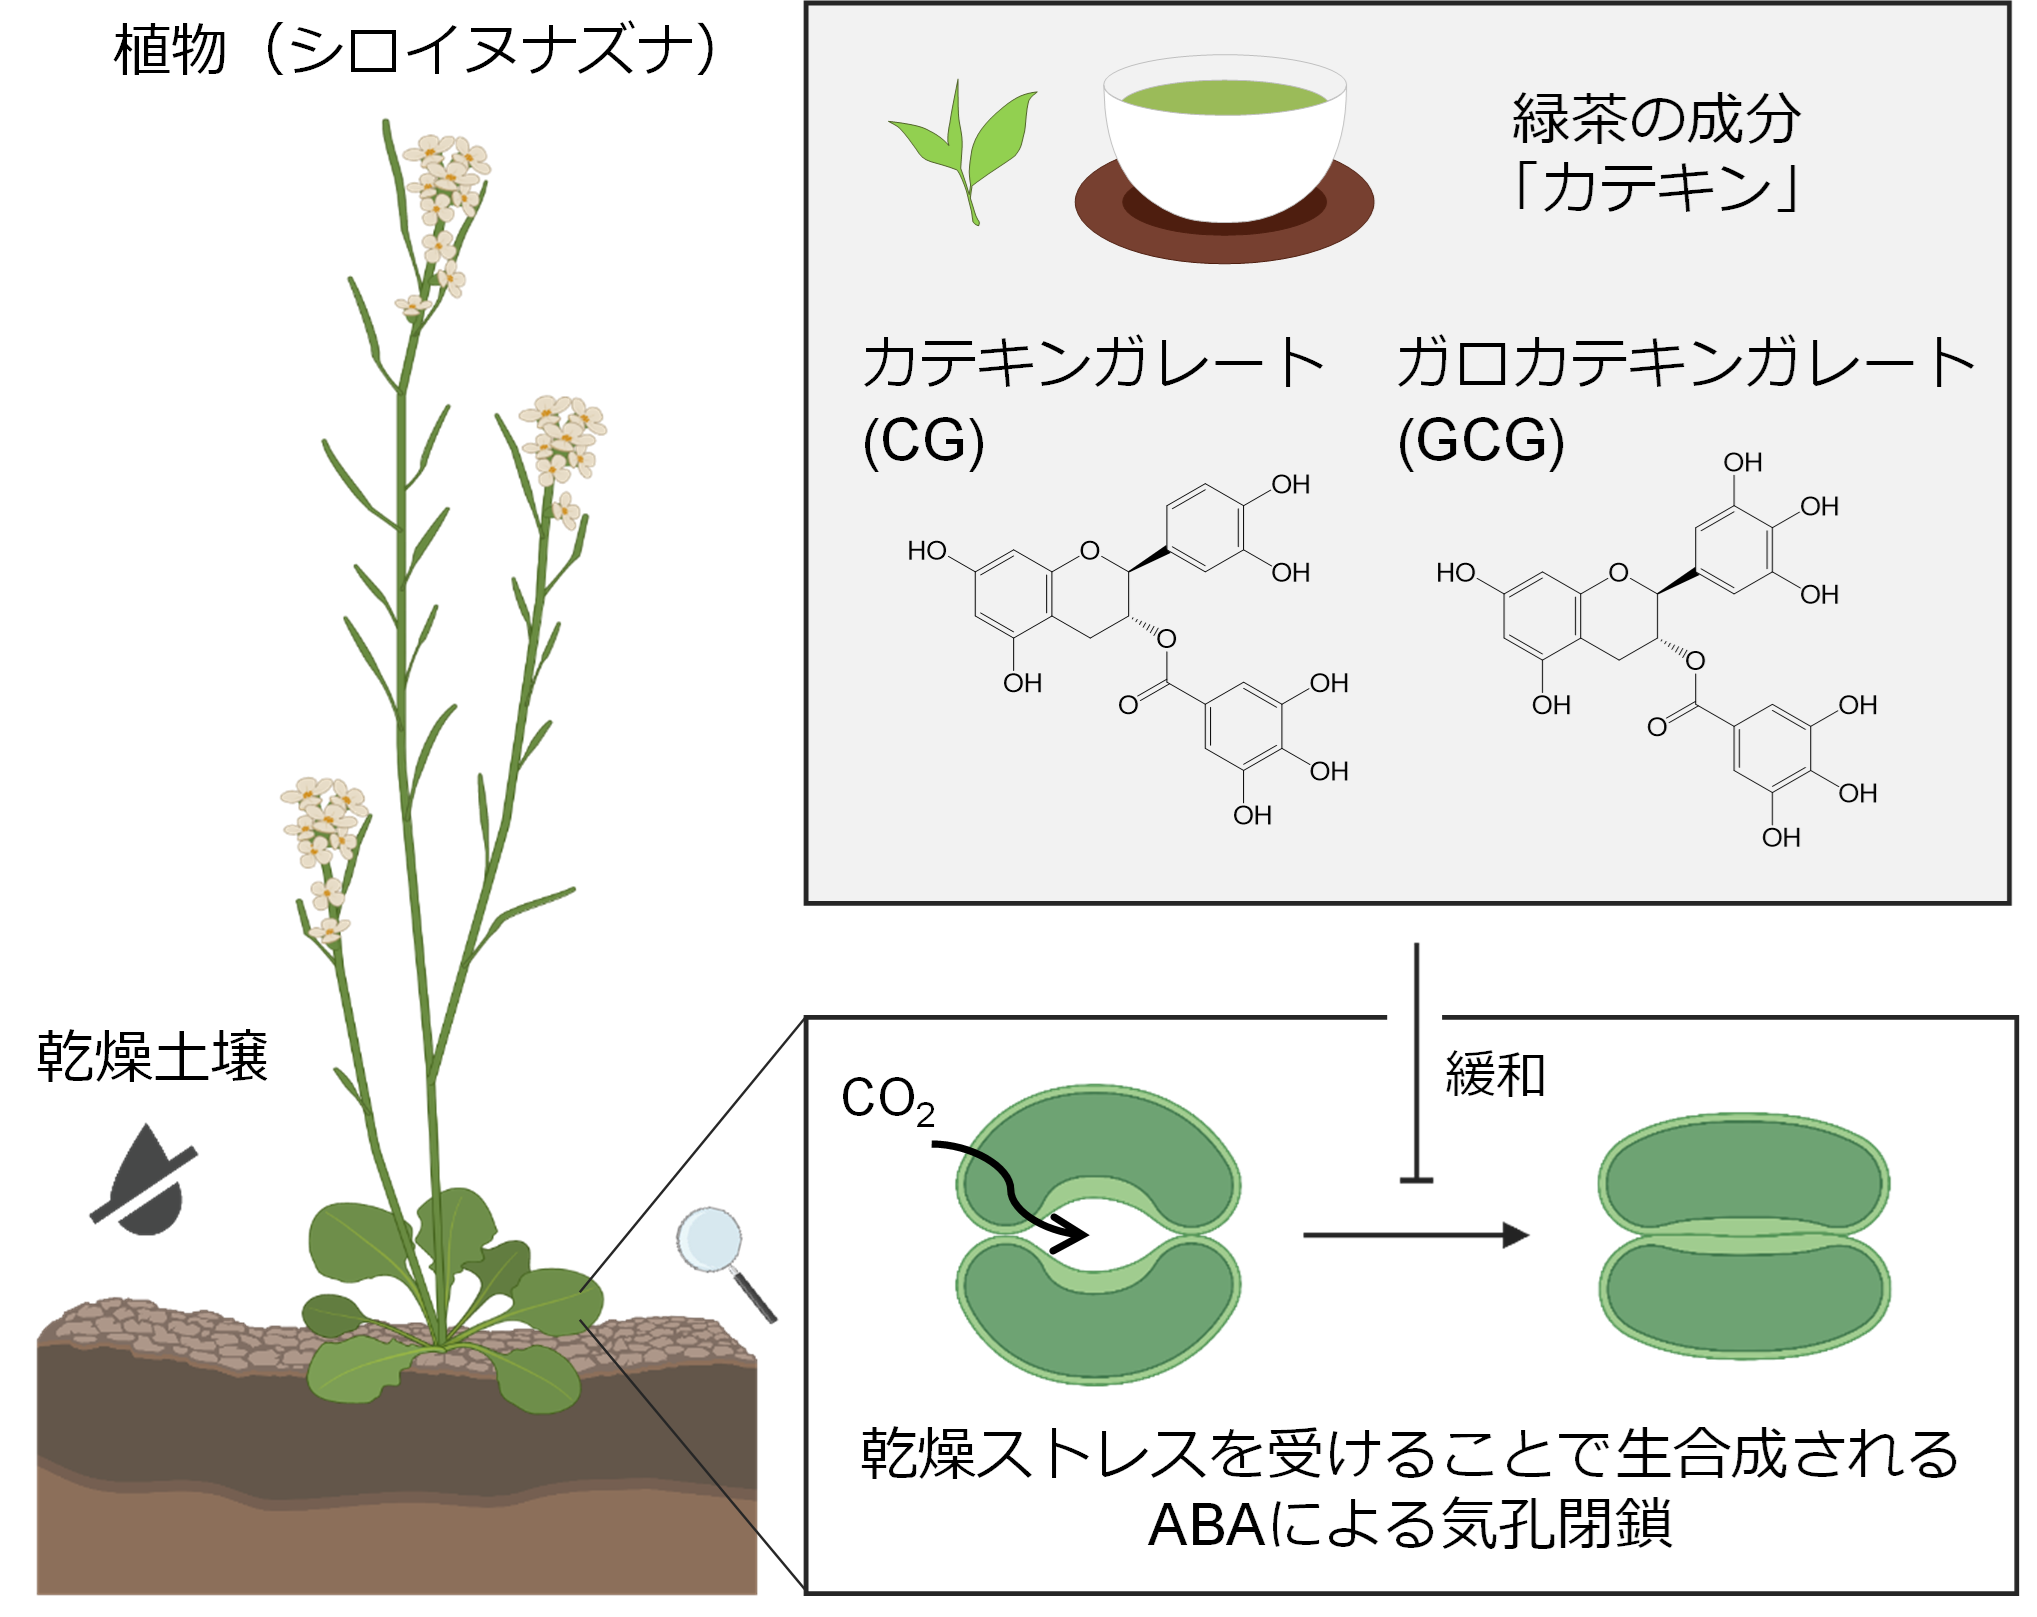 植物の乾燥適応経路を抑制する天然化合物の同定<br>- 緑茶で植物もストレスから開放される -